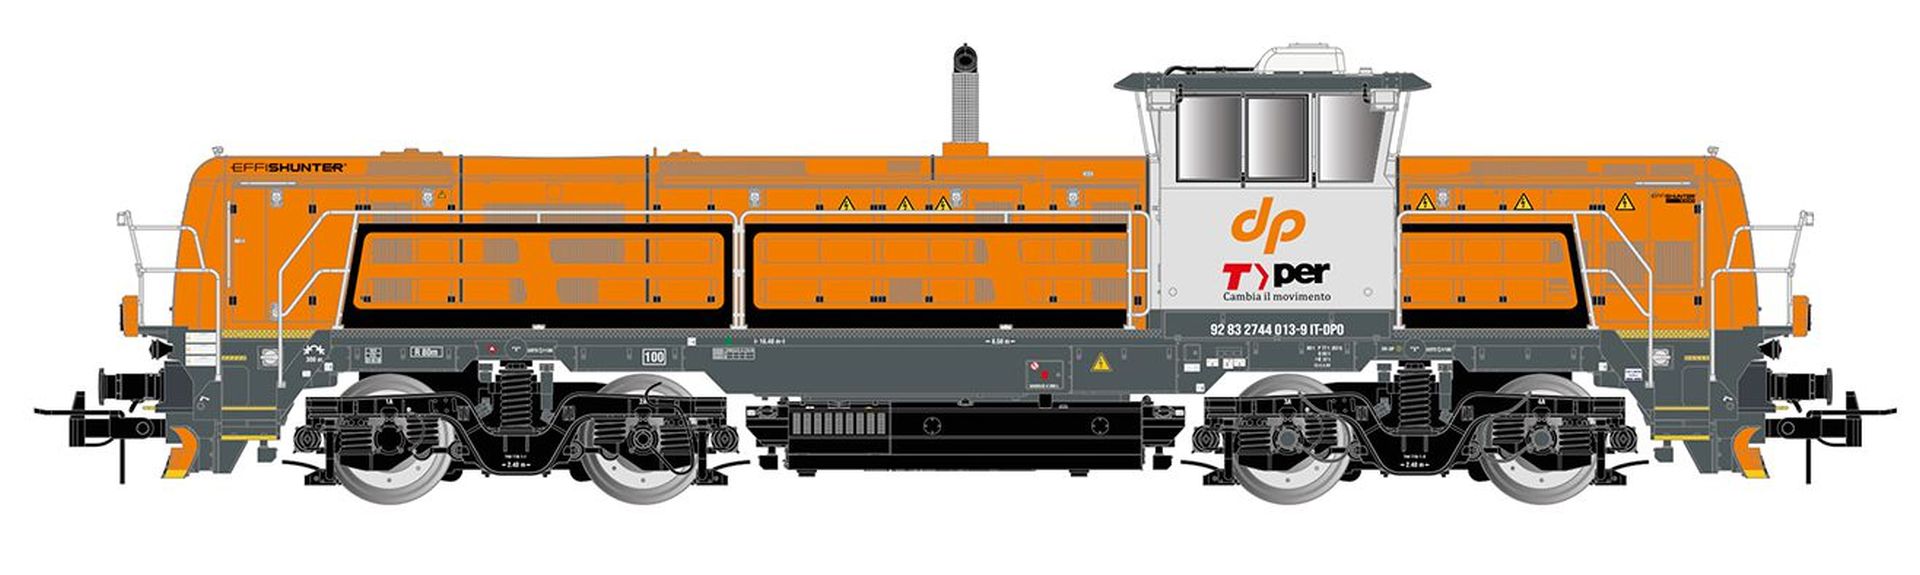 Rivarossi HR2923 - Diesellok EffiShunter 1000, Dinazzano Po/TPER, Ep.VI